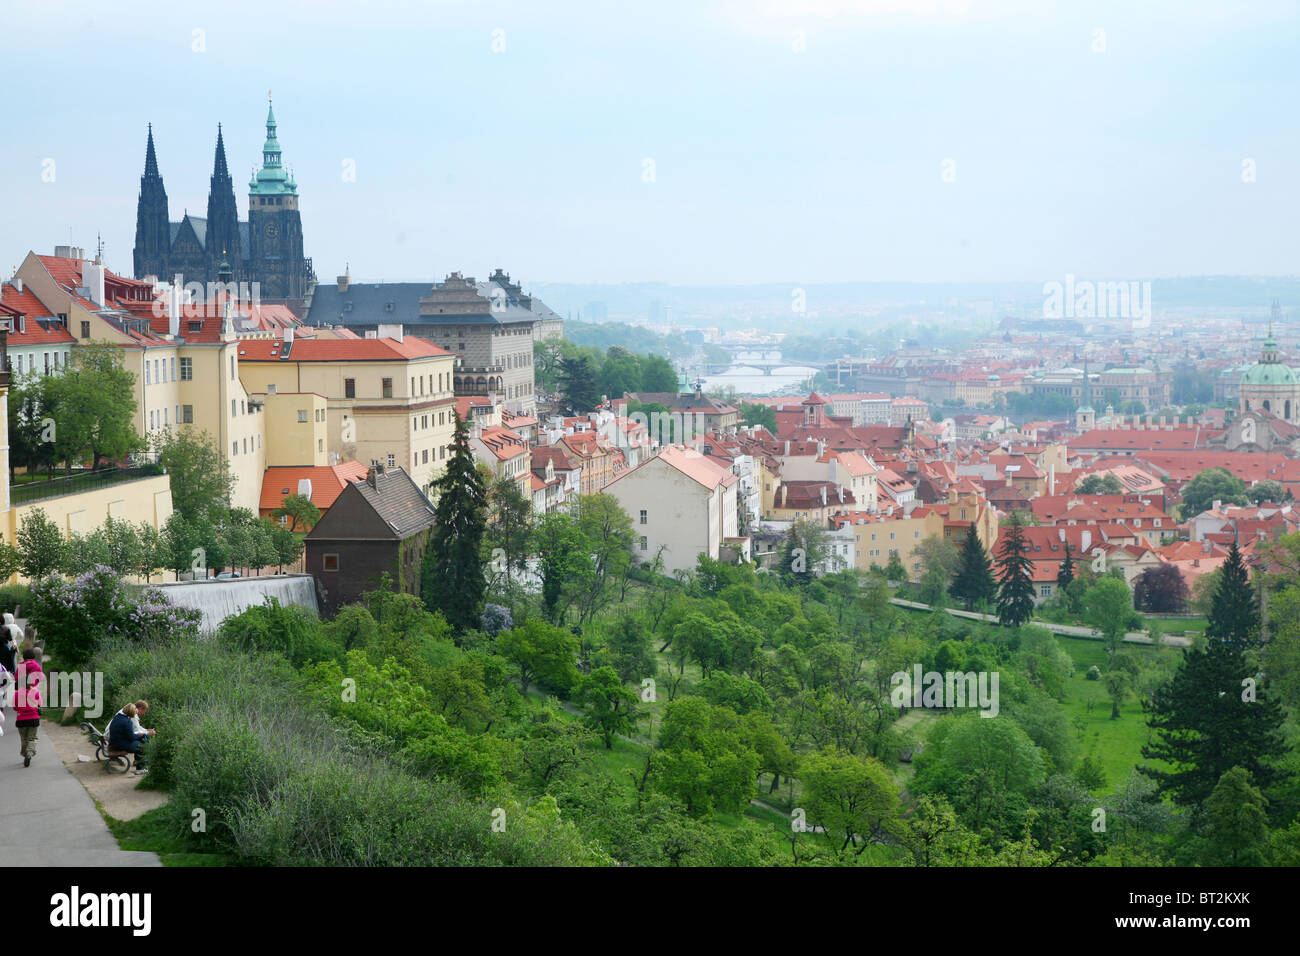 Magnifique paysage de toits rouges de la vieille ville de Prague. Banque D'Images